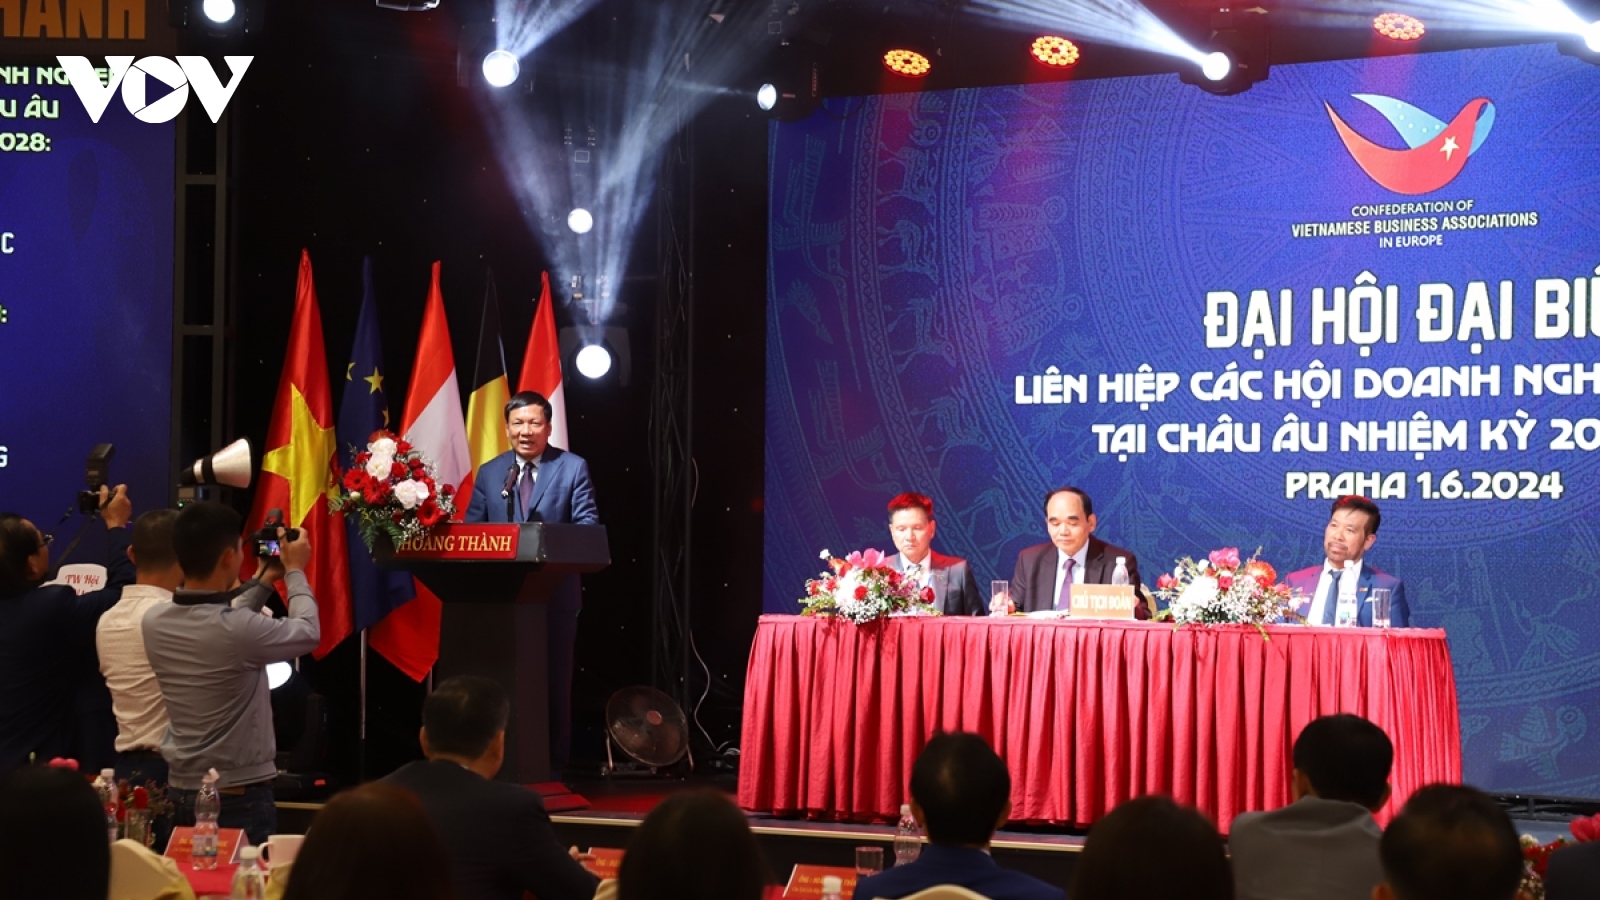 Đại hội đại biểu Liên hiệp các Hội Doanh nghiệp Việt Nam tại châu Âu